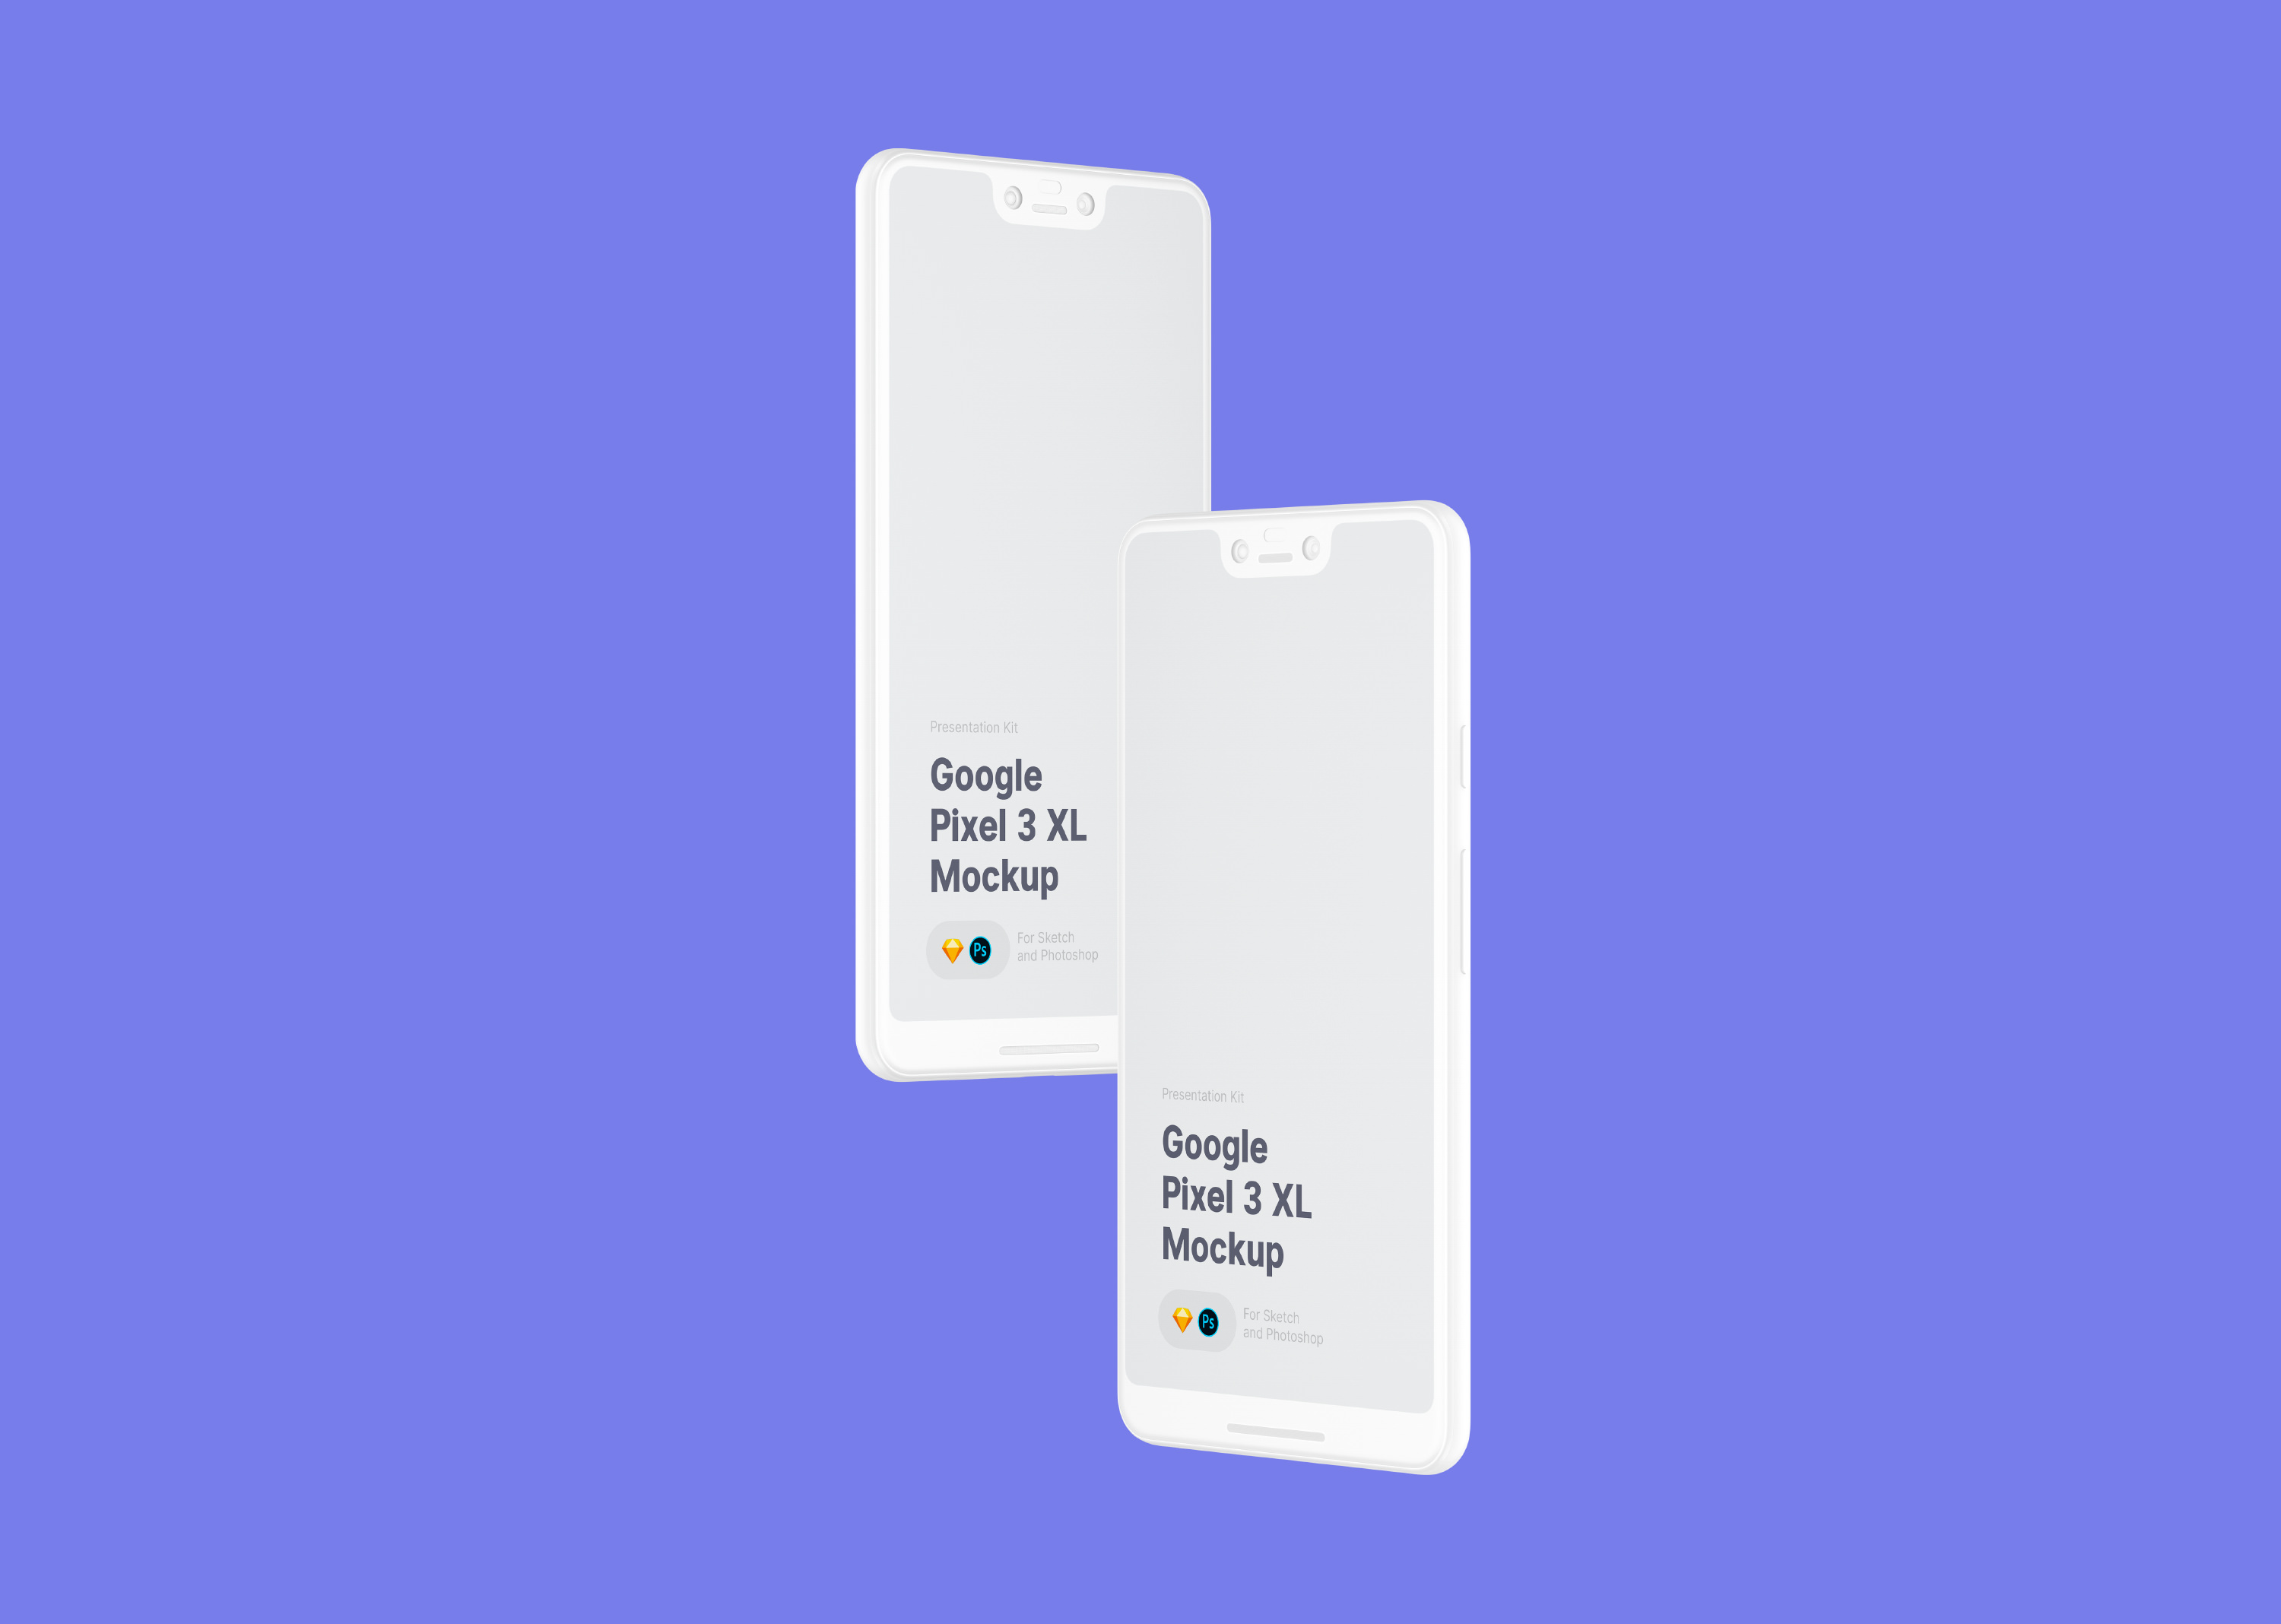 高质量谷歌手机APP设计提案UI界面贴图样机模板 Free